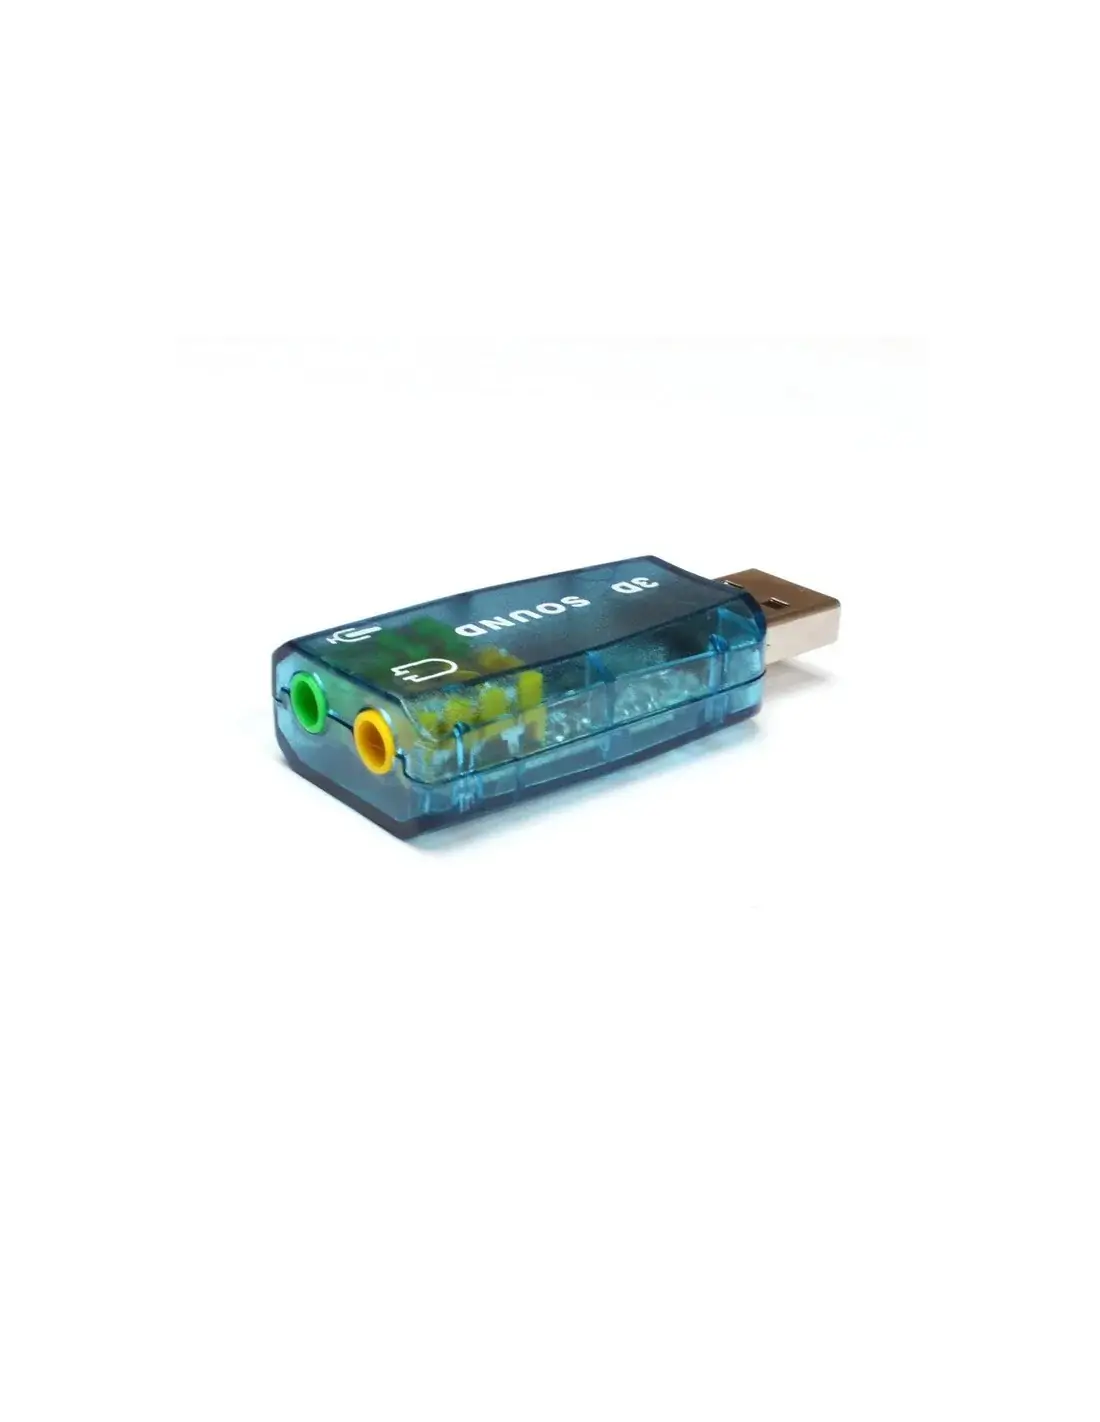 TARJETA DE SONIDO USB 2.0 2 CANALES 5.1 – Importrade